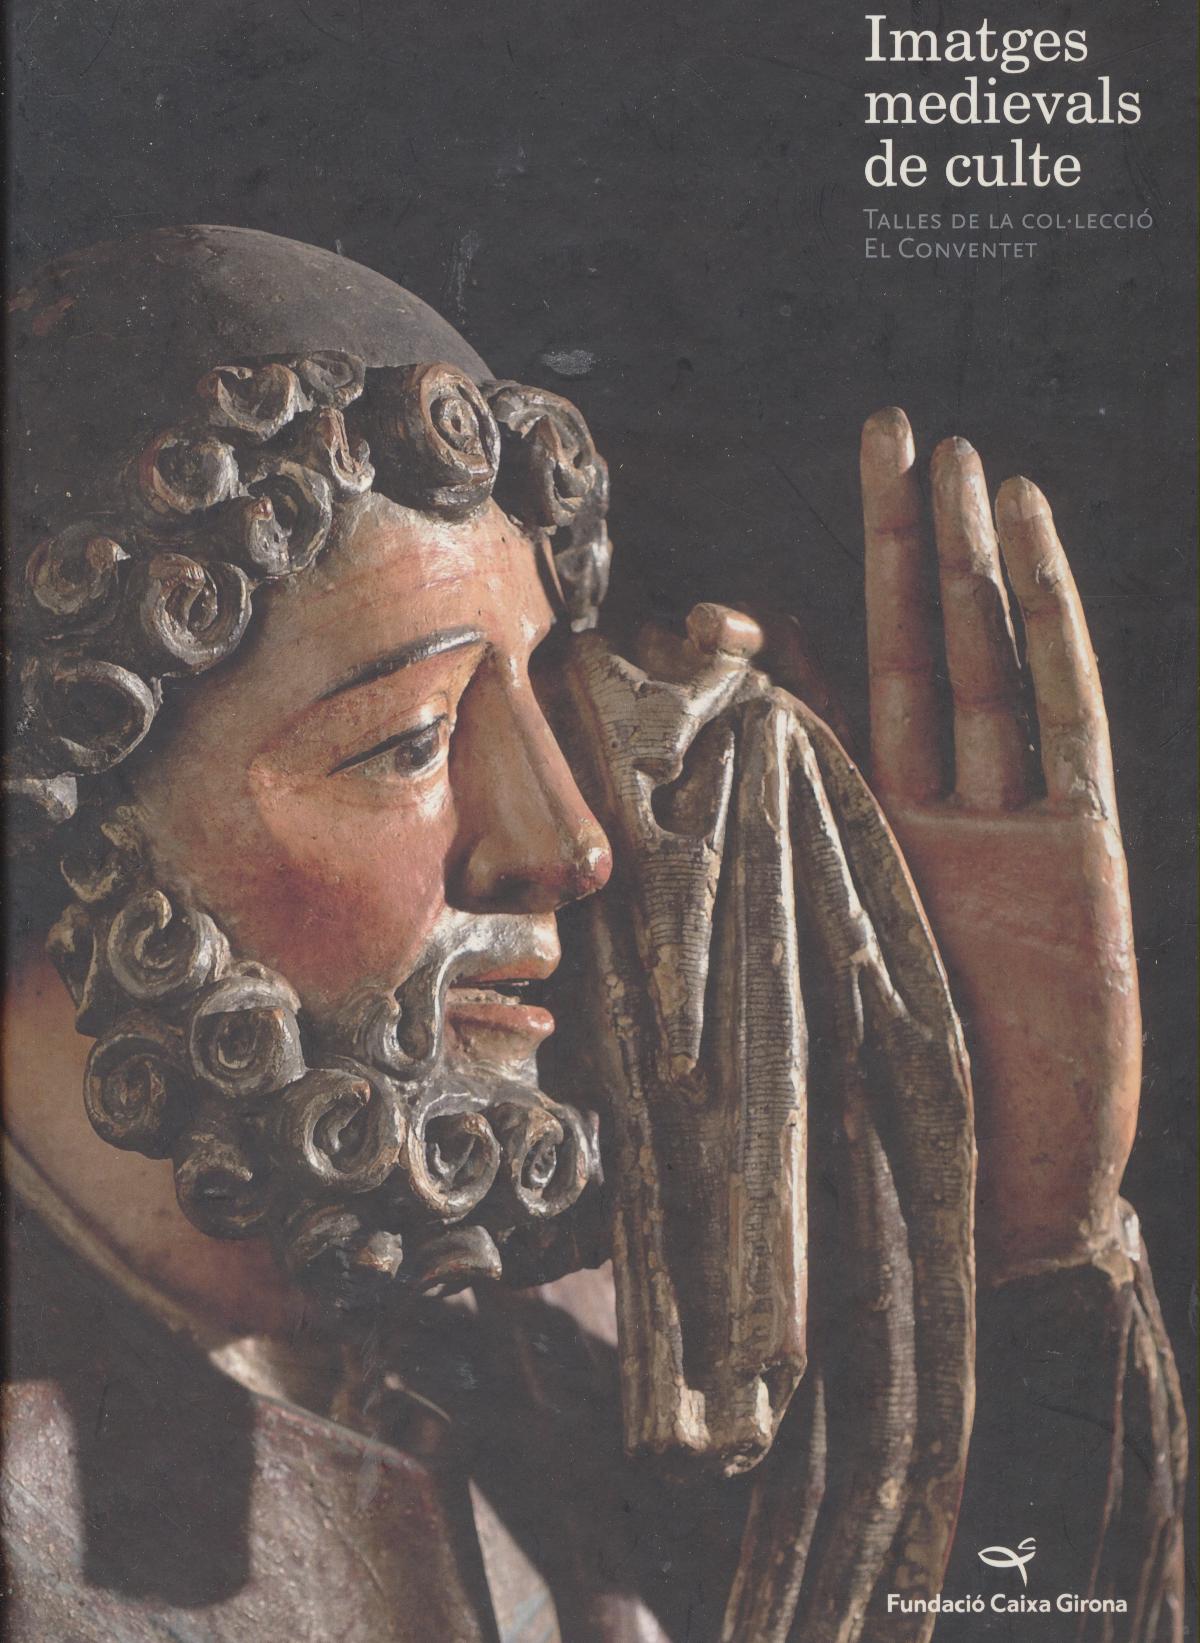 Imatges Medievals de culte. Talles de la col-lecció El convenent fundació Caixa Girona